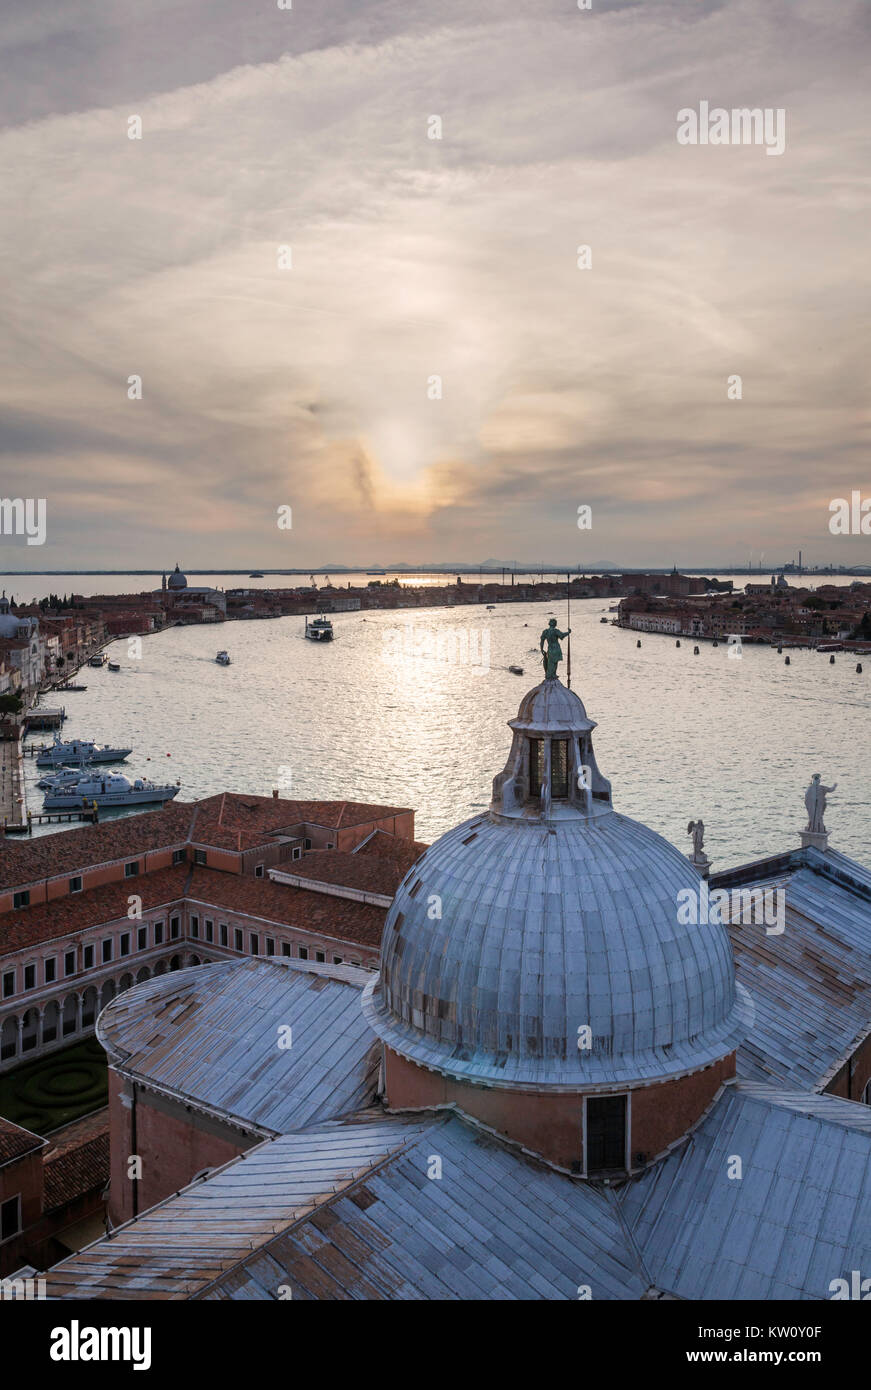 Soir vue vers le Grand Canal, Venise, du campanile de San Giorgio Maggiore montrant la coupole de l'église au premier plan et le coucher du soleil Banque D'Images